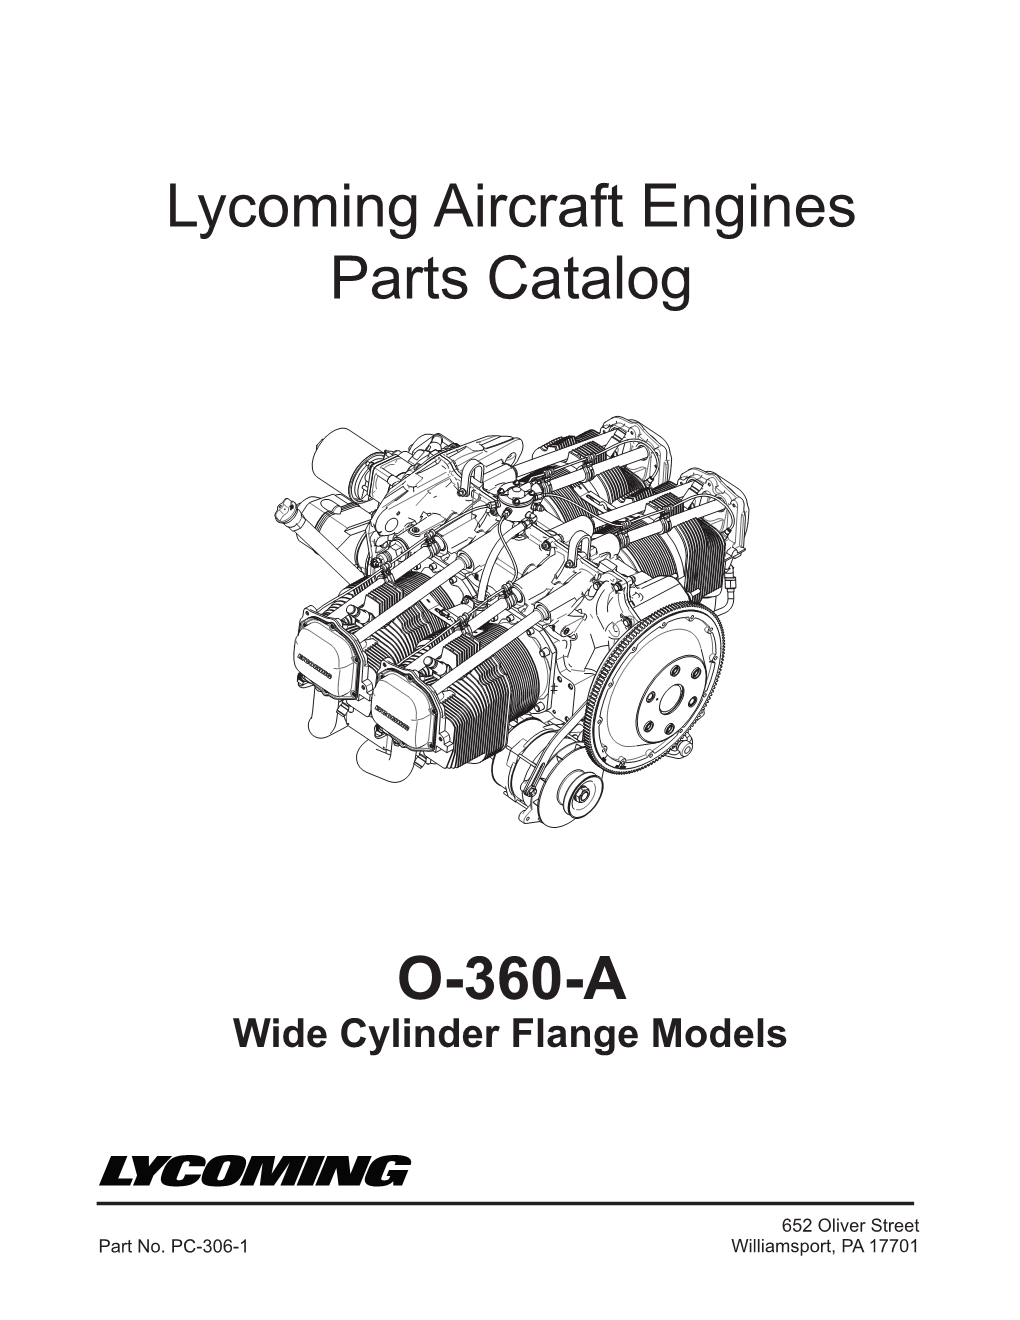 O-360-A Lycoming Aircraft Engines Parts Catalog